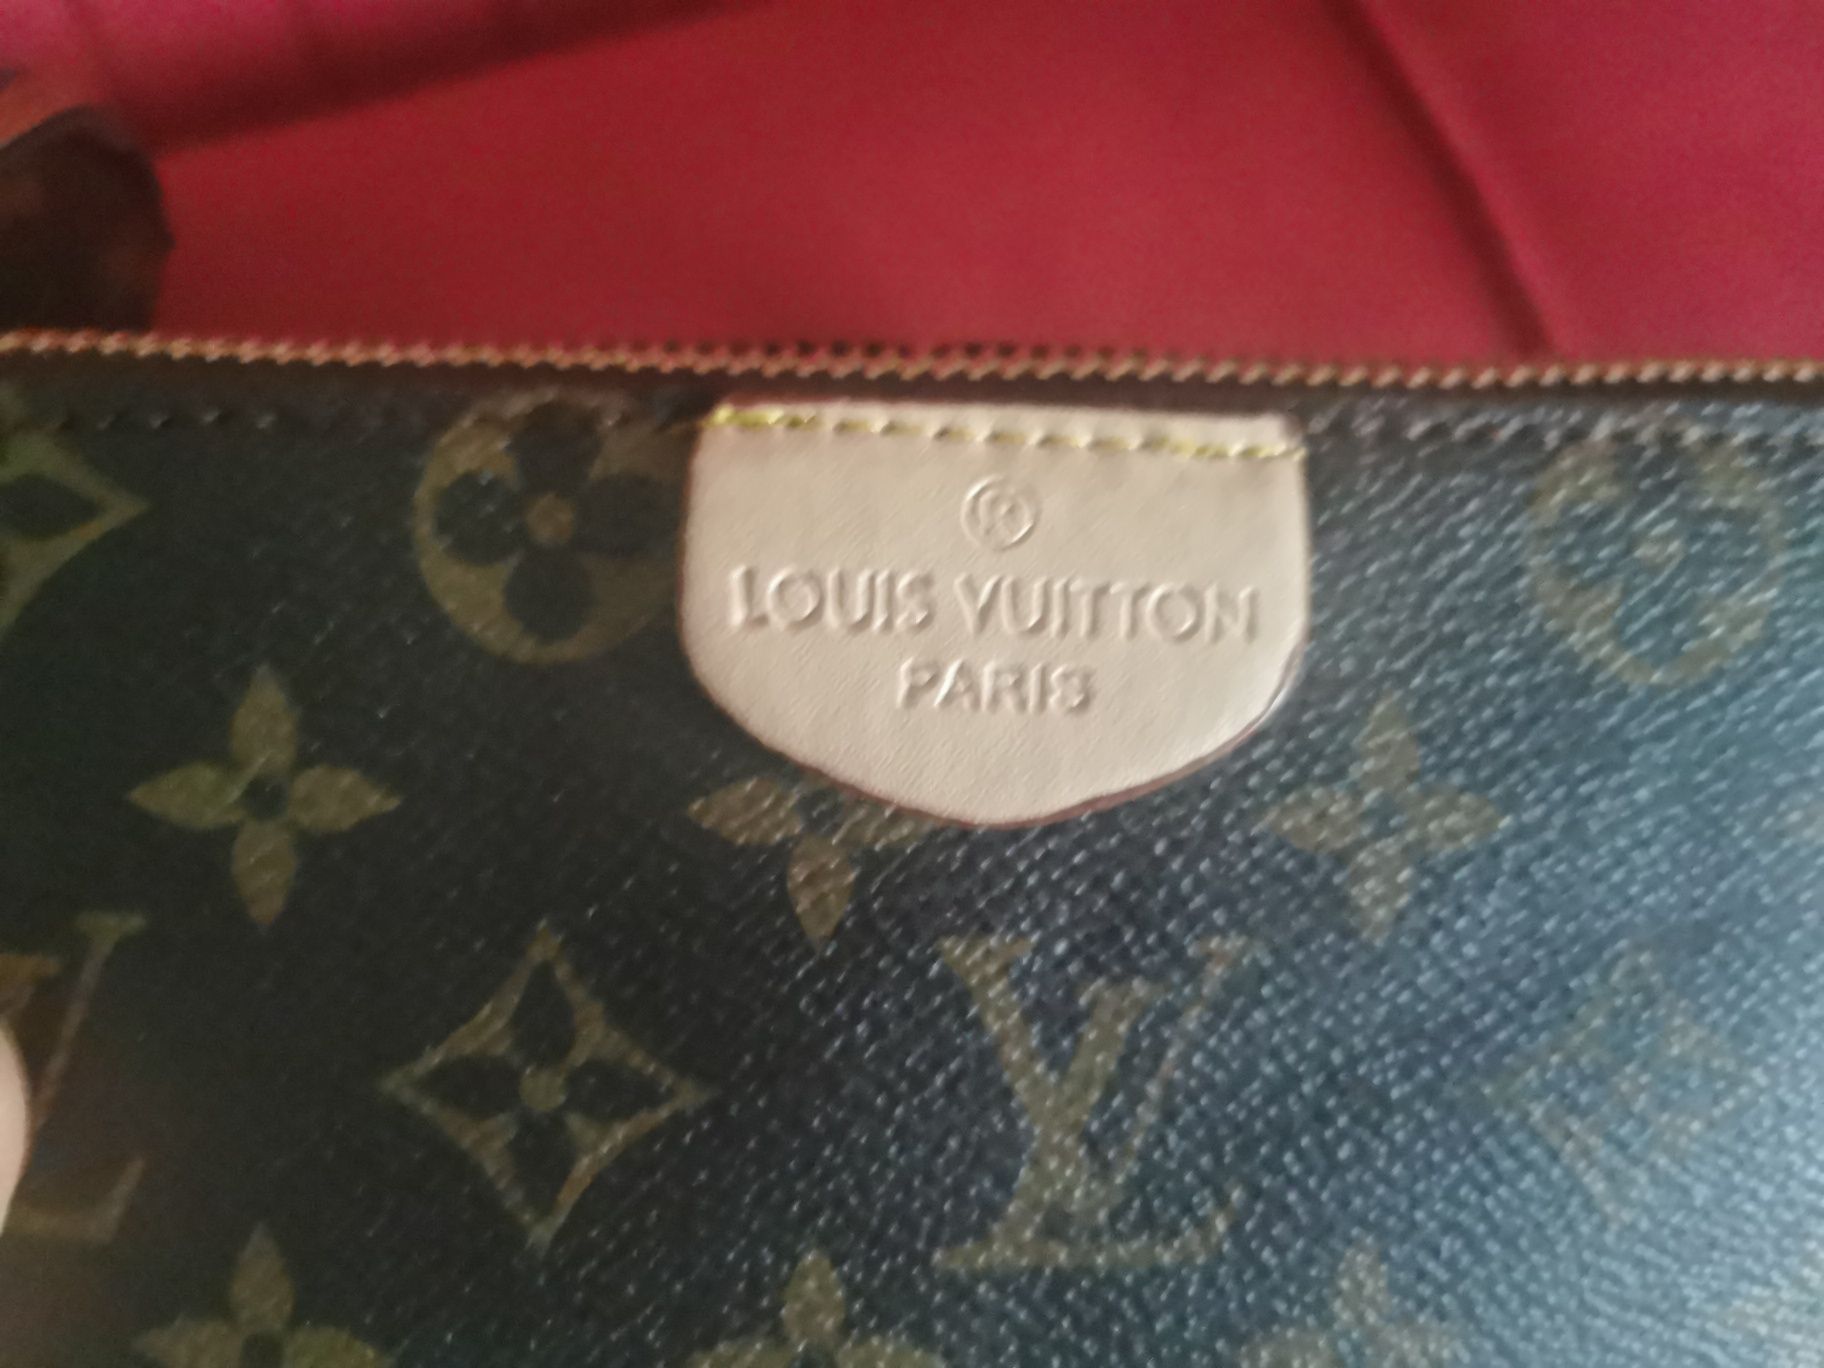 Nowa torebka damska Louis Vuitton w kolorze brązowym. Logowana